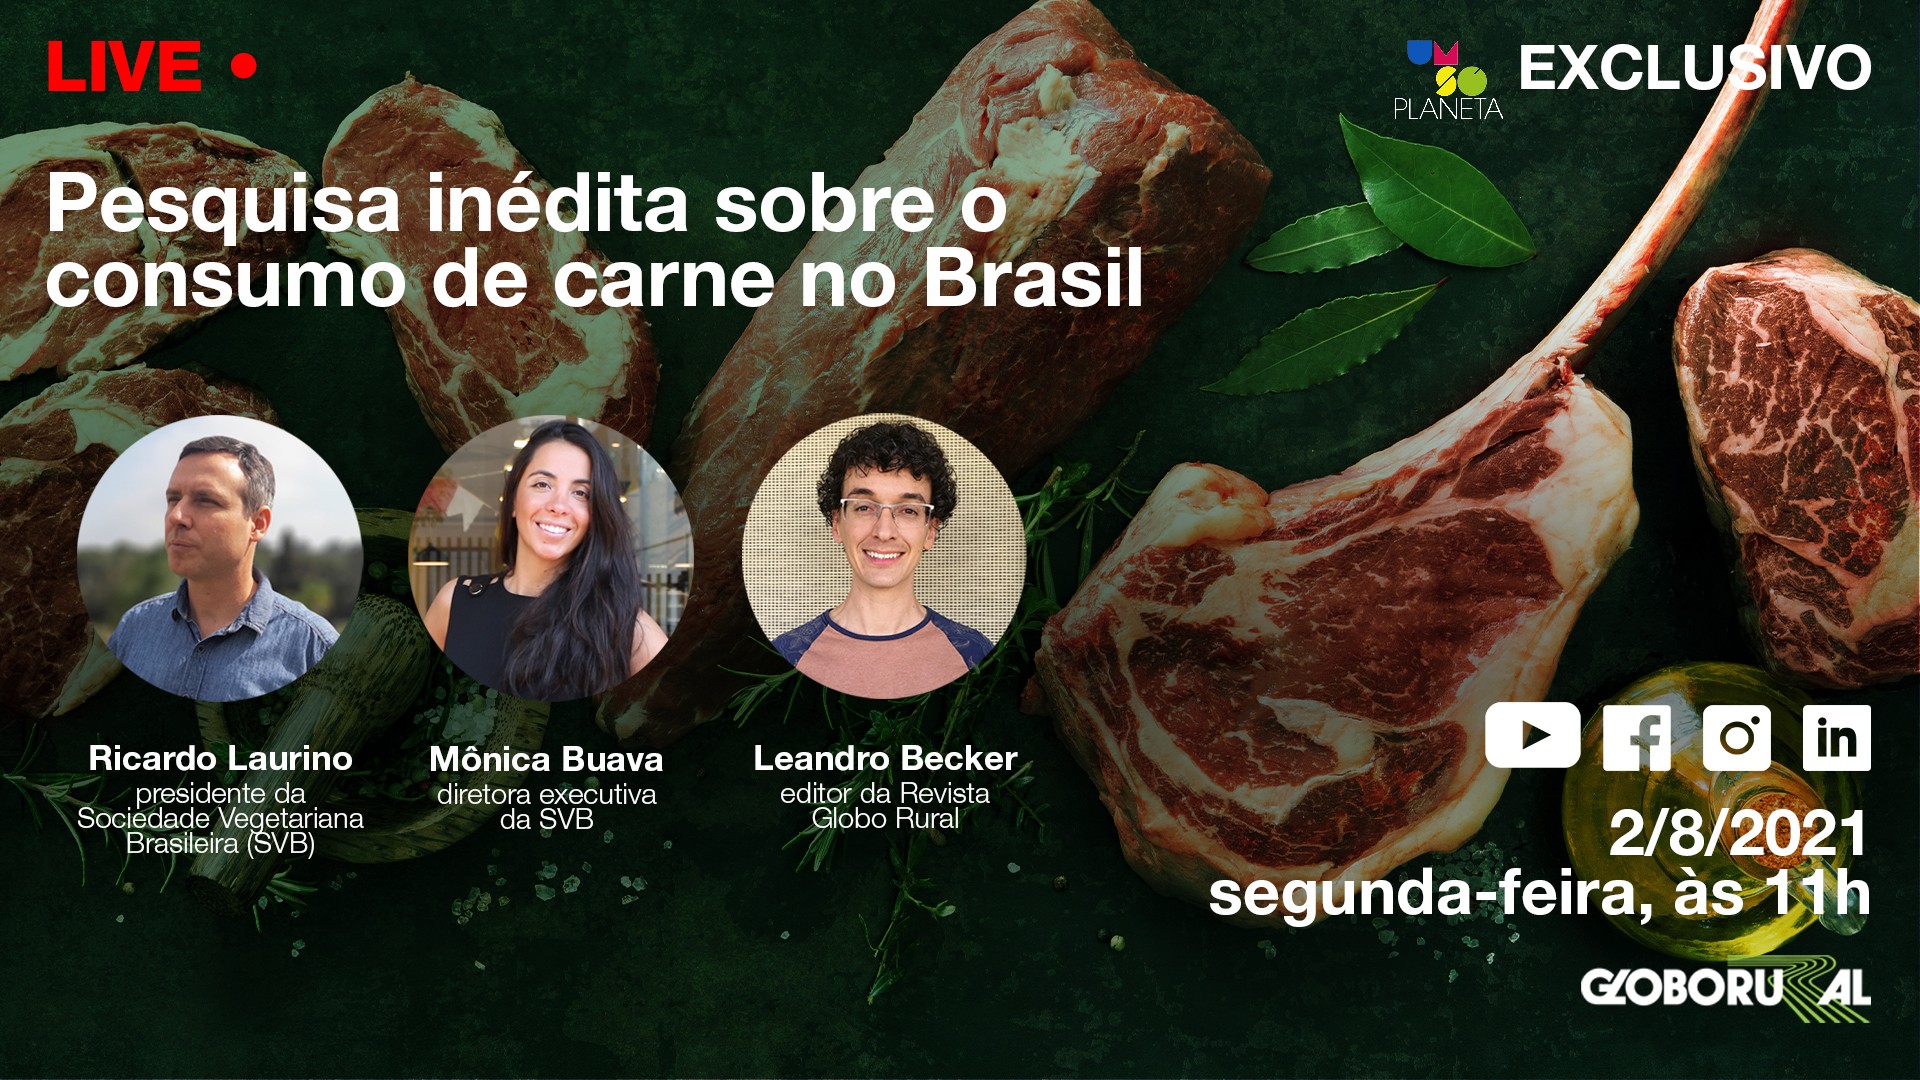 Live Globo Rural com pesquisa inédita sobre consumo de carne no Brasil (Foto: Estúdio de Criação)